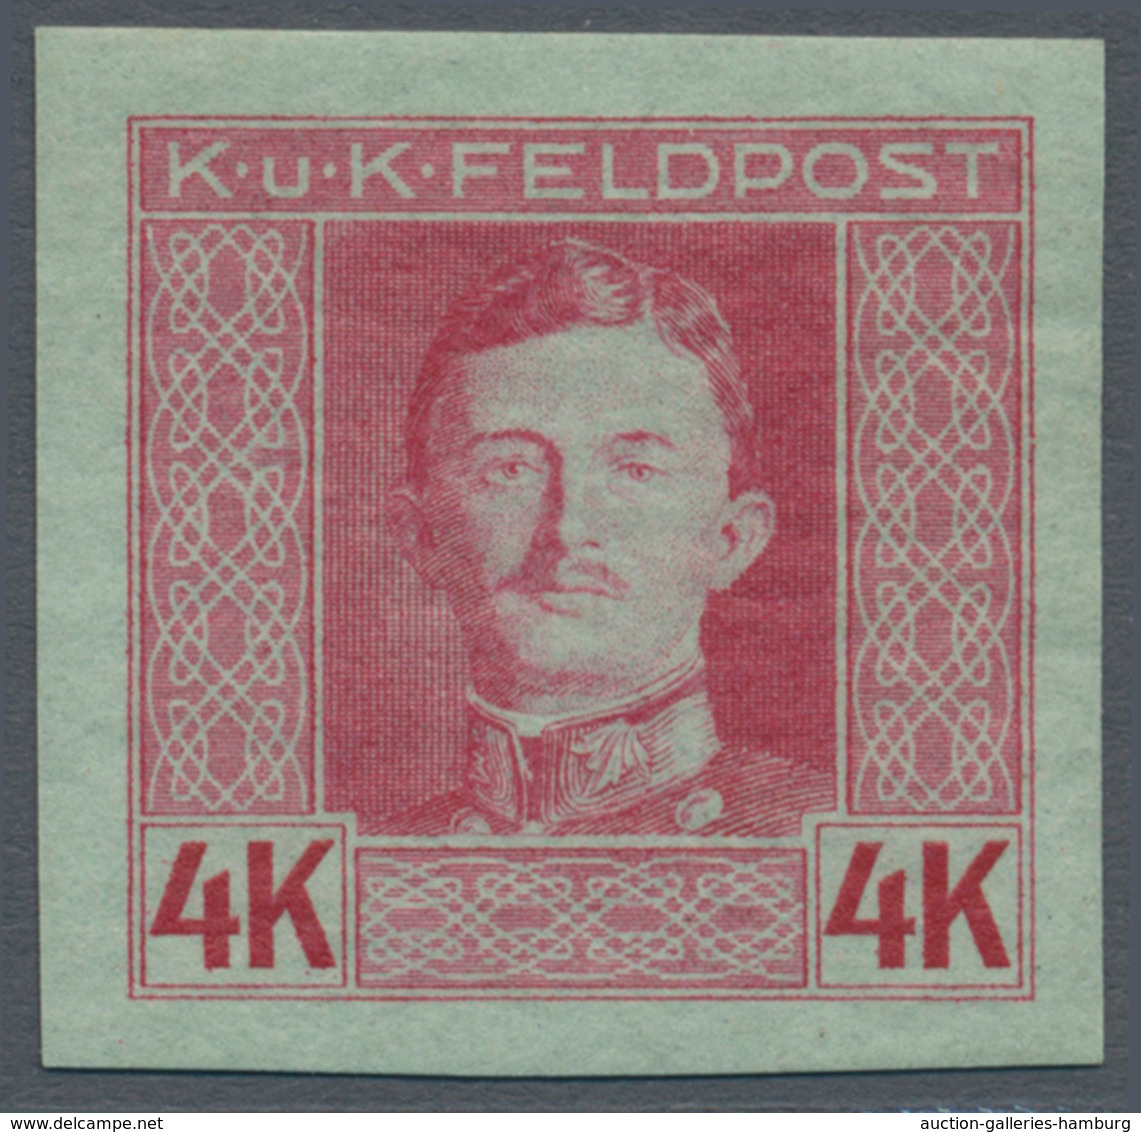 Österreichisch-Ungarische Feldpost - Allgemeine Ausgabe: 1915, 1 H - 10 K Kaiser Karl UNGEZÄHNT, kom